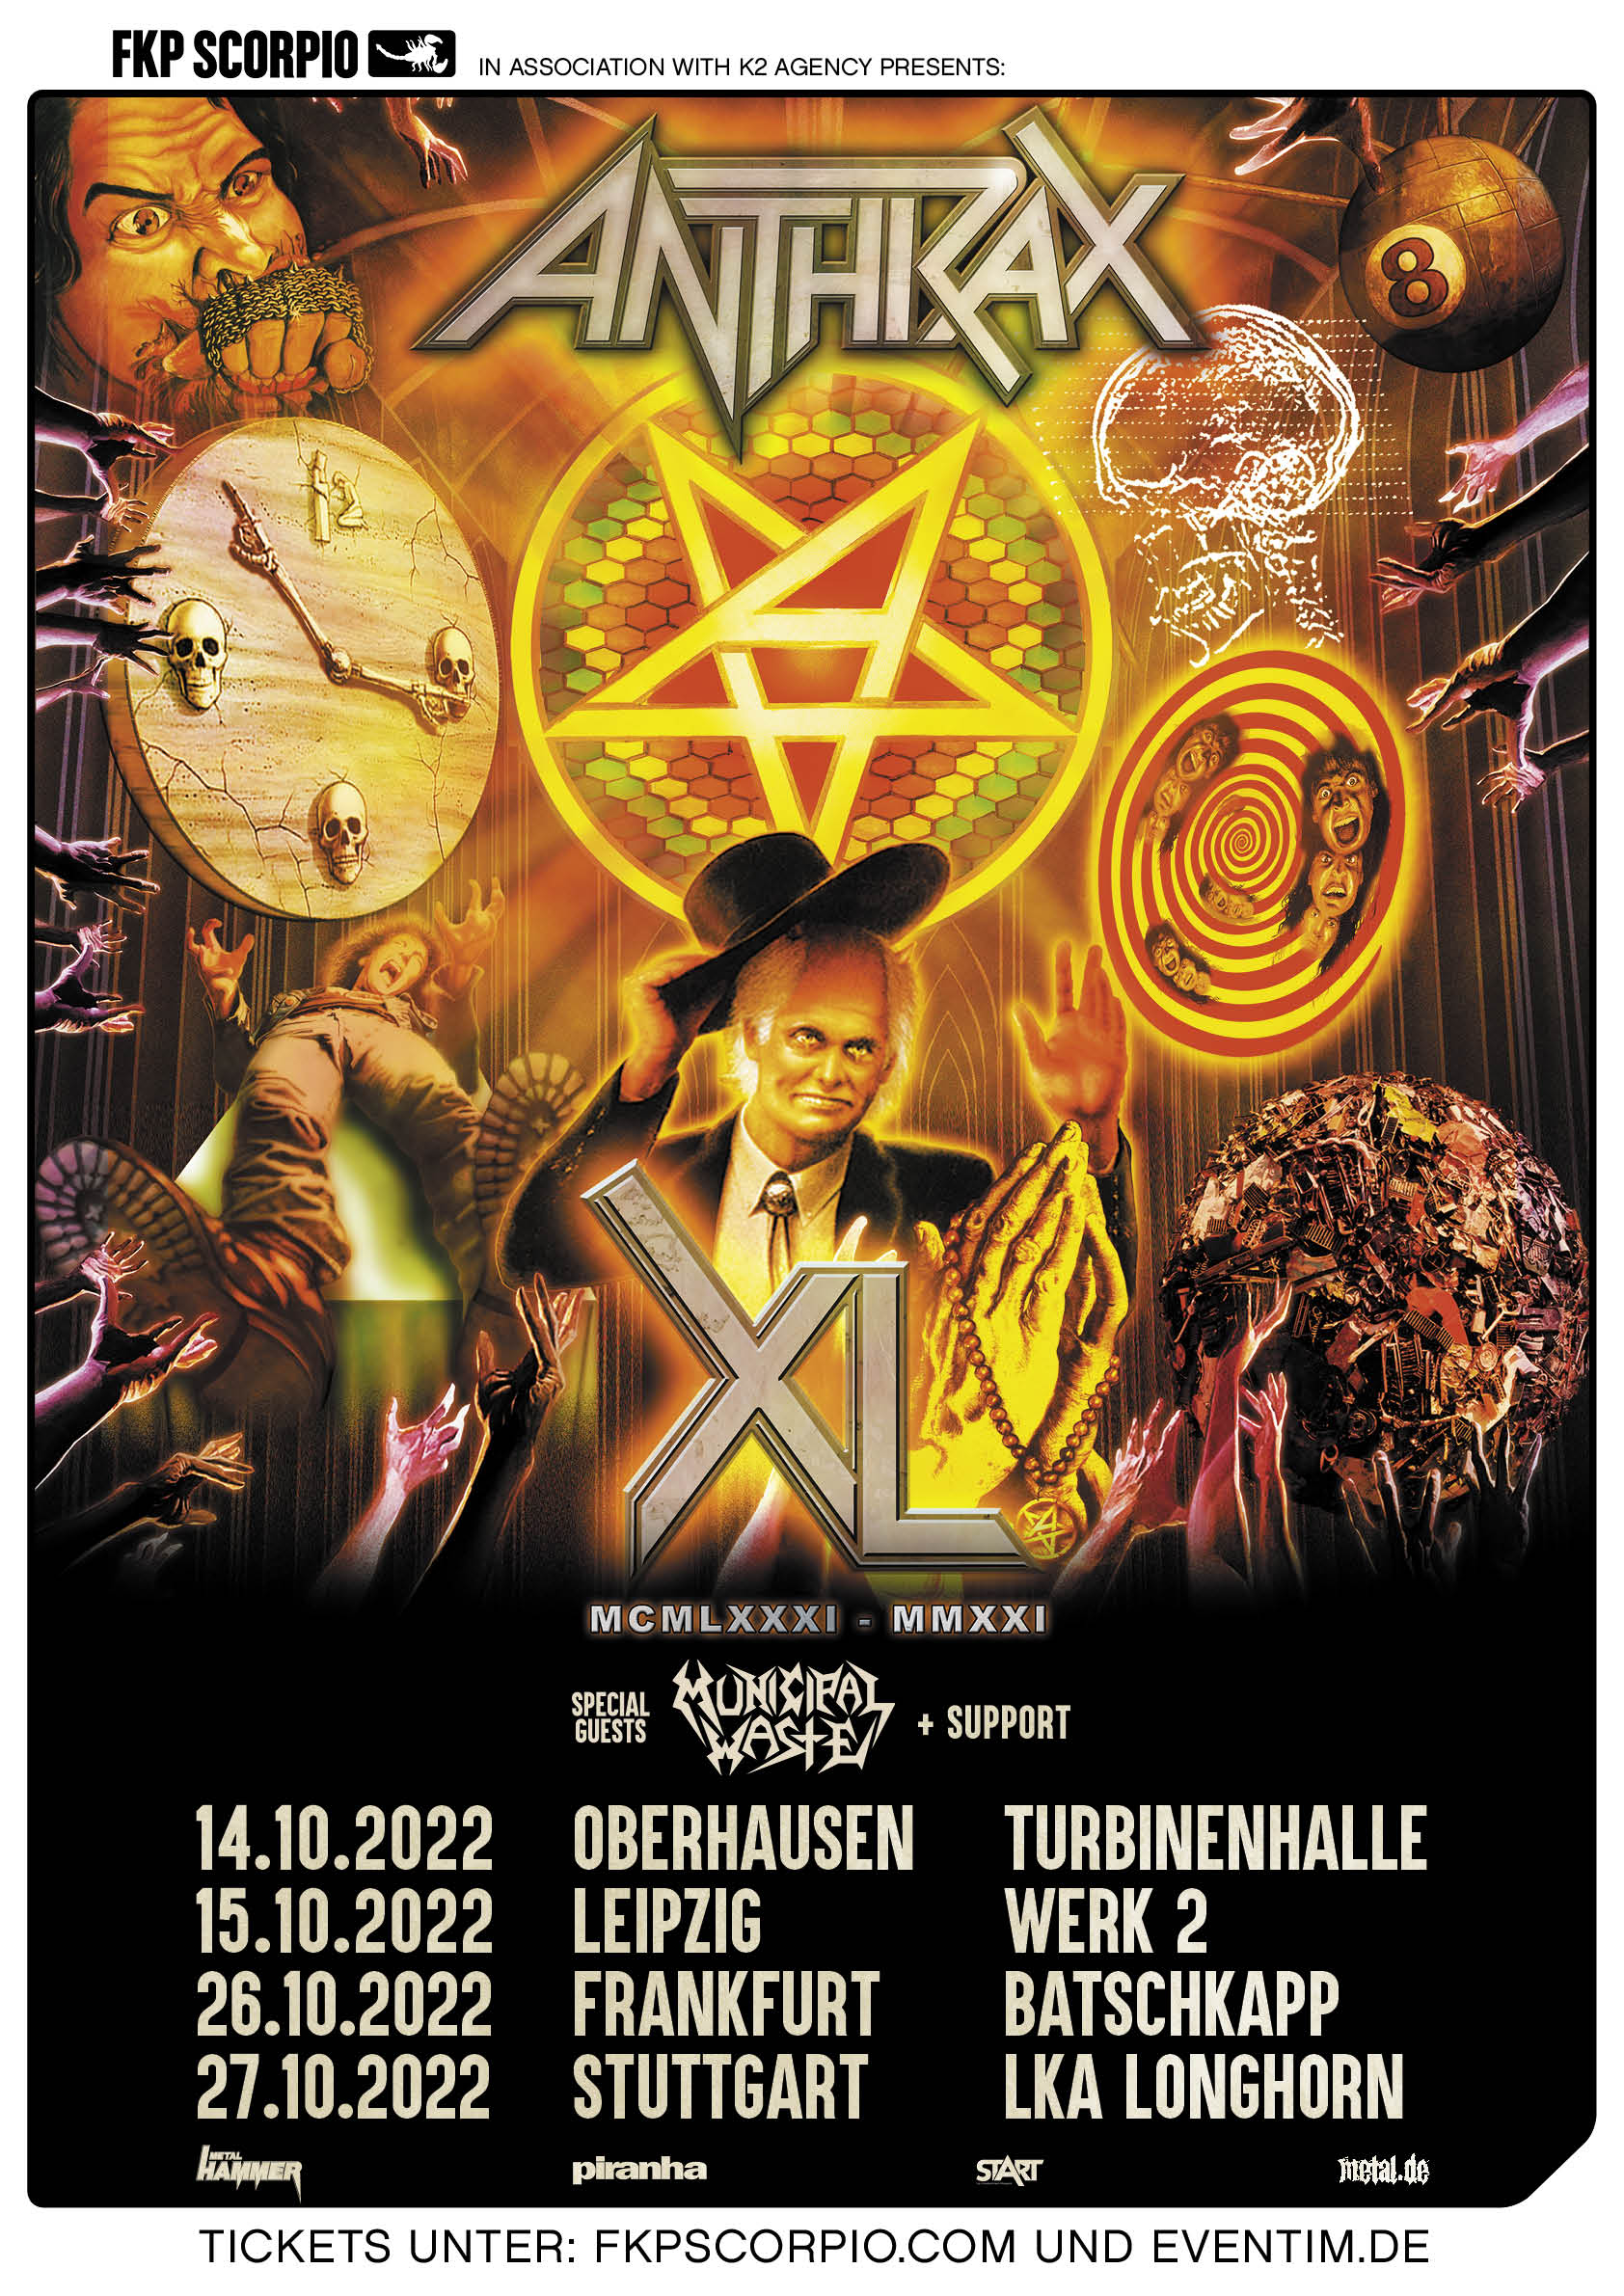 [Tour] Anthrax Tour zum 40jährigen Jubiläum im Herbst 2022 Slyzza